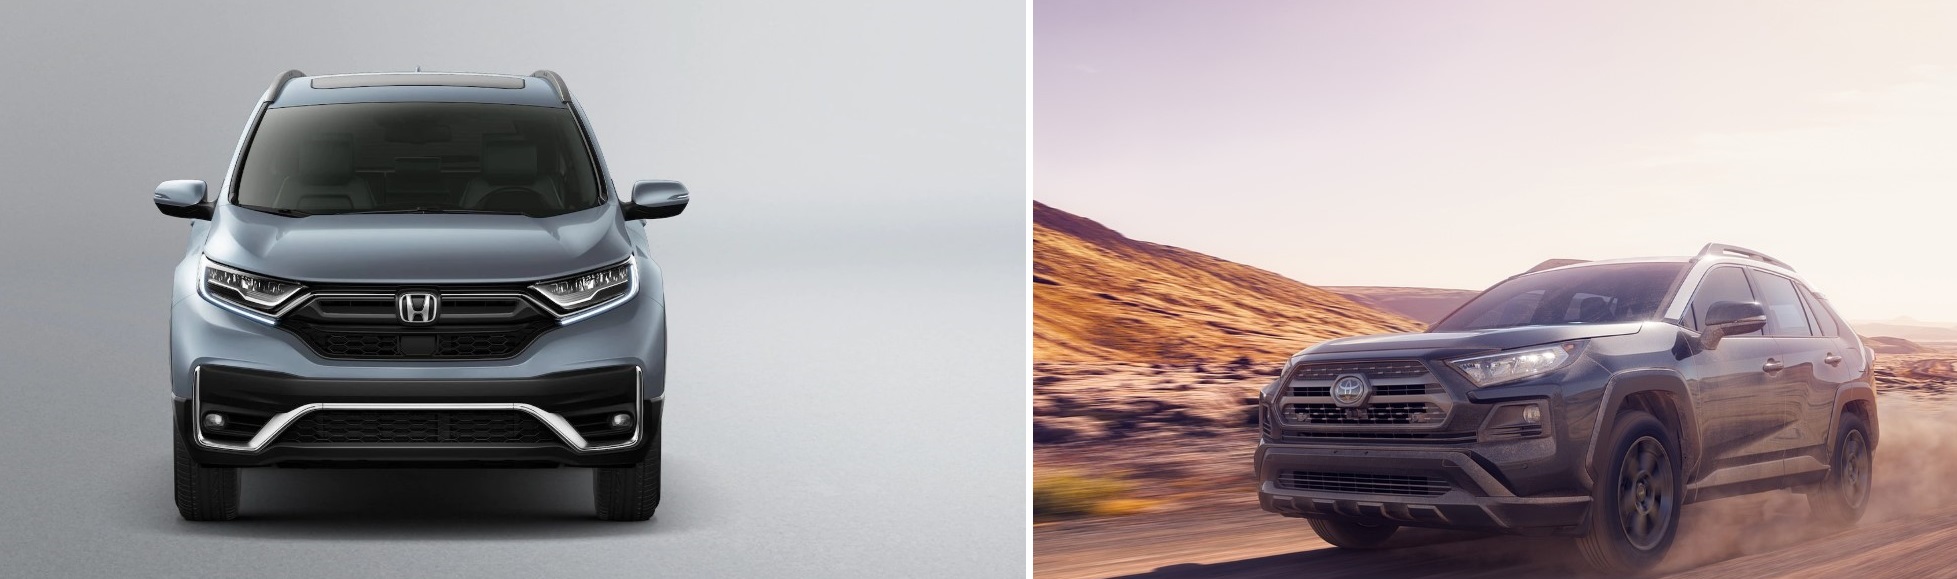 2020 Honda CR-V Versus 2020 Toyota RAV4: Compare Crossovers